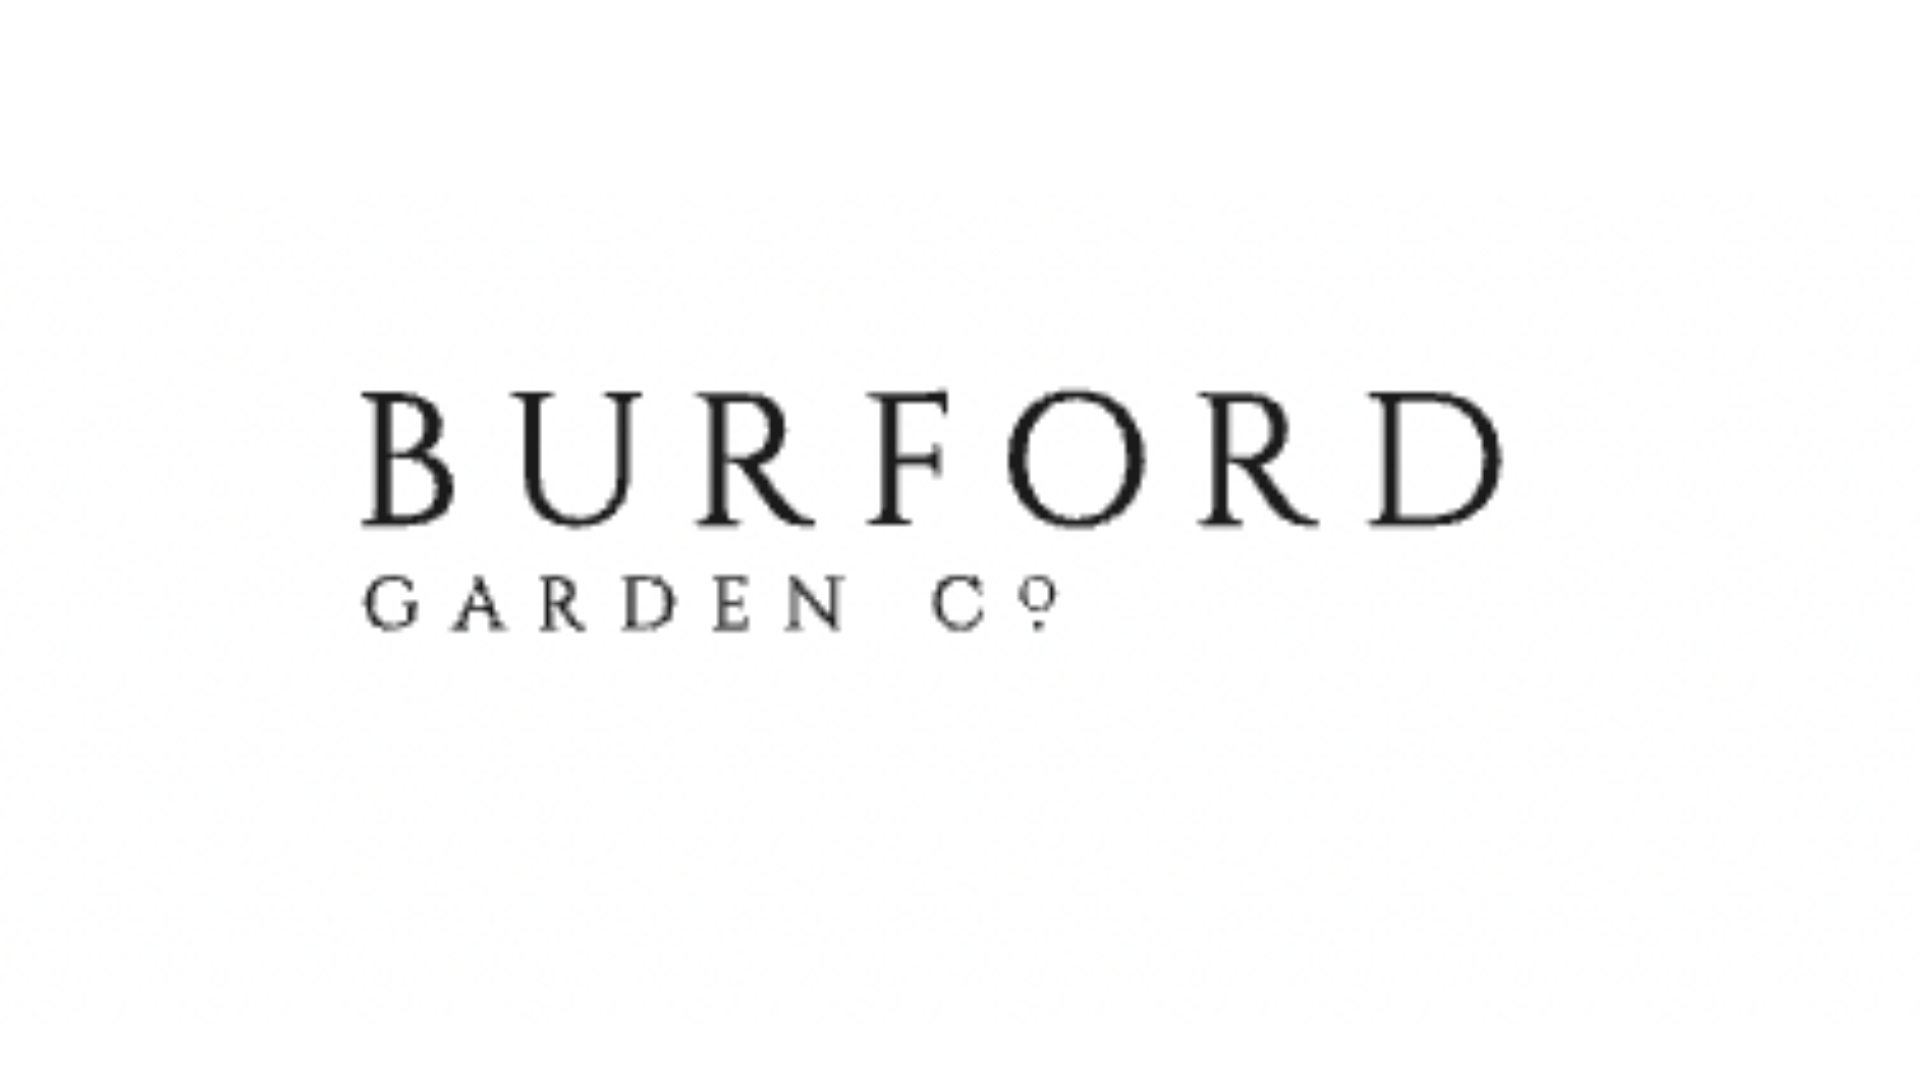 Buford Garden co. logo - home